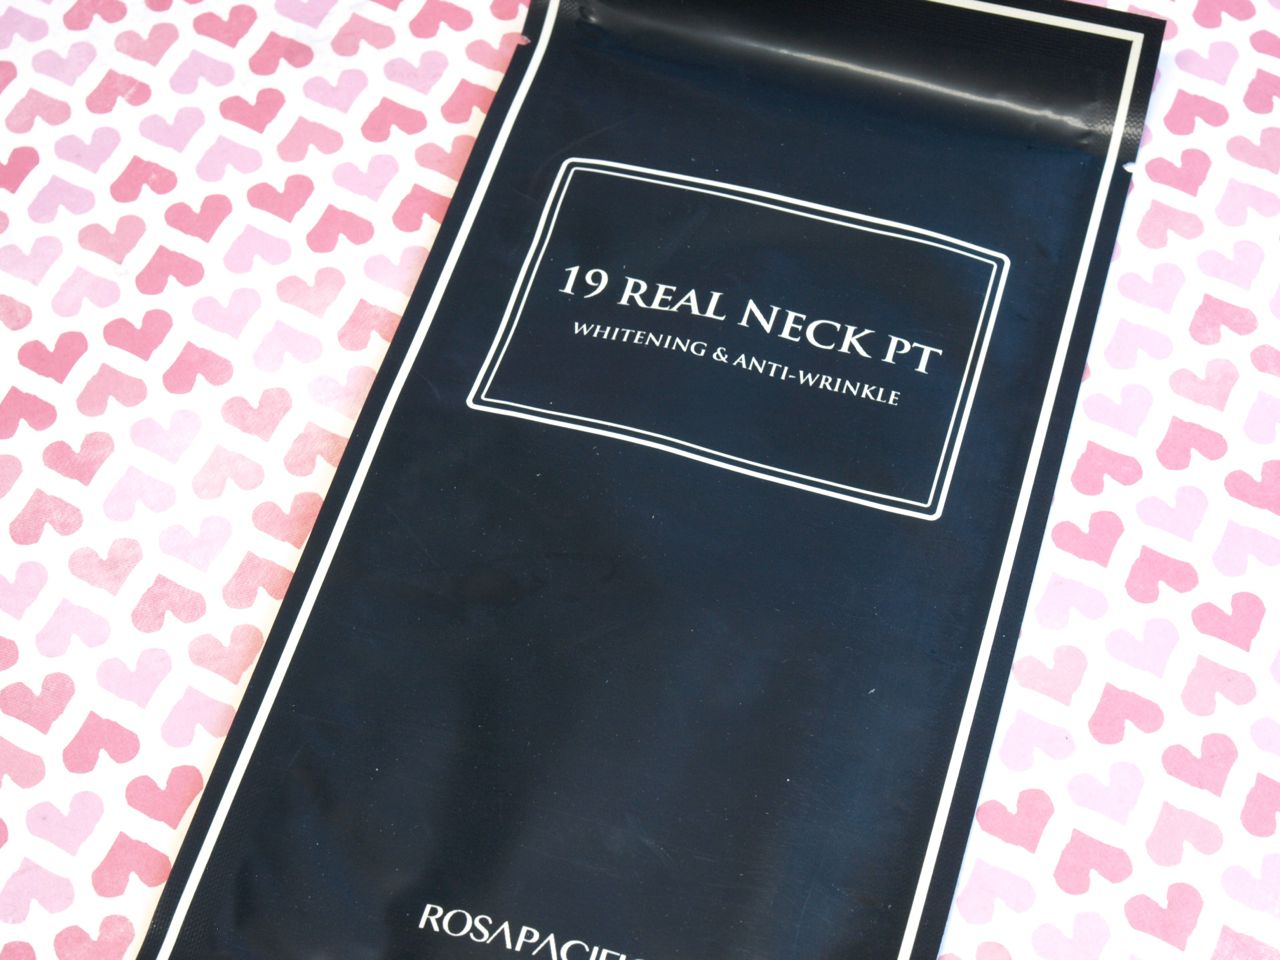 Rosapacific 19 Real Neck Sheet ($3.5 per sheet):